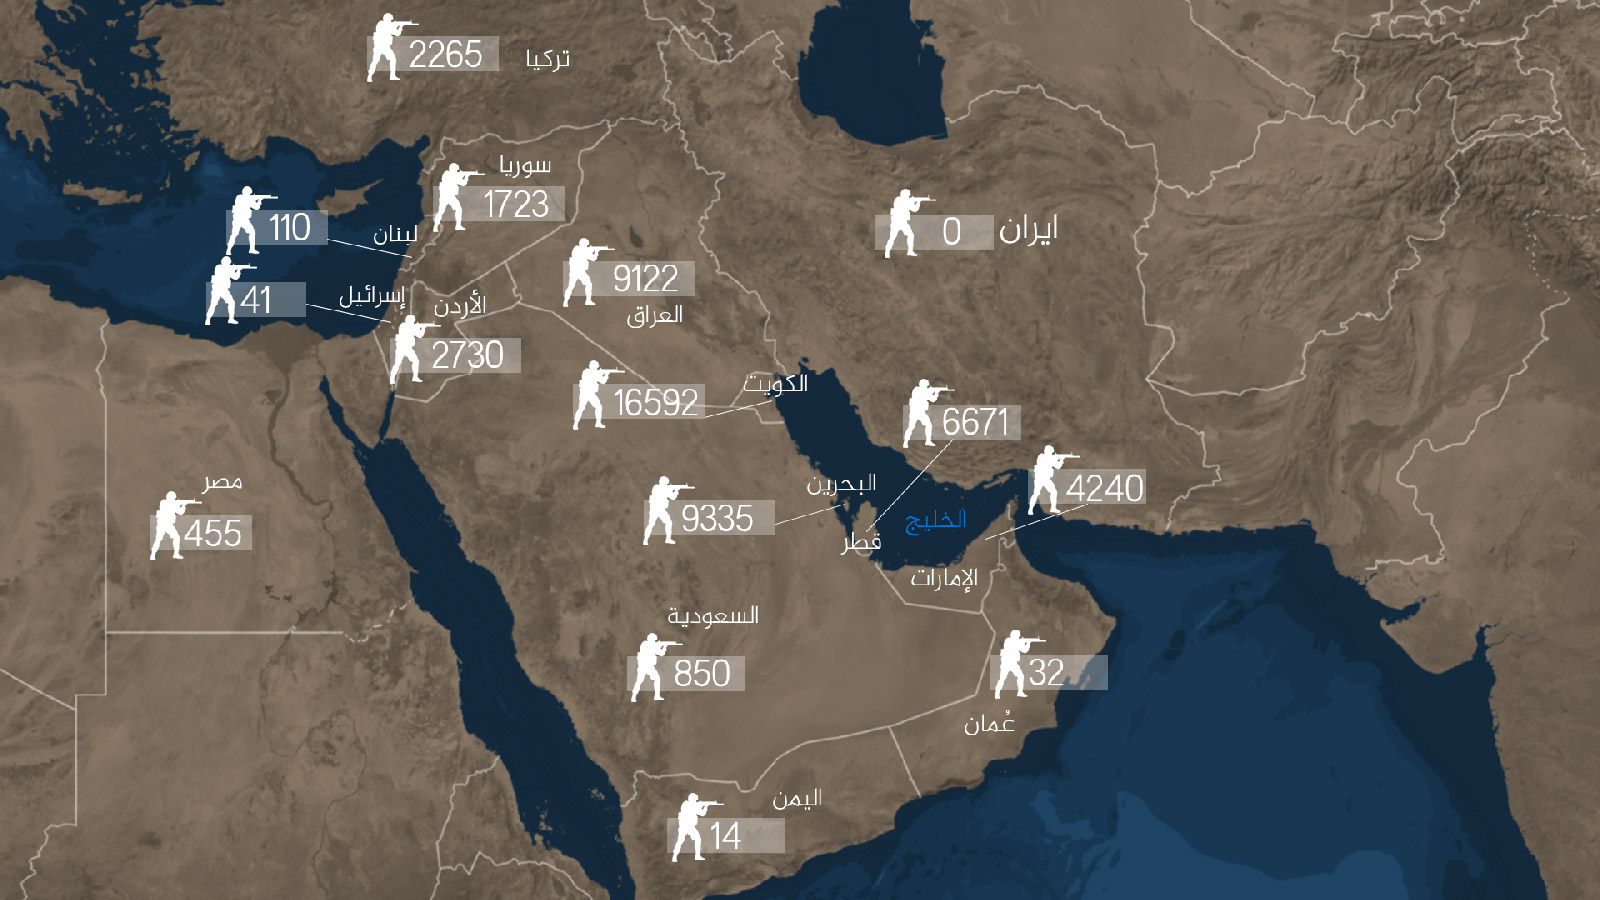 ‪خريطة انتشار القوات الأميركية في الشرق الأوسط‬ (مركز تشاتام هاوس)